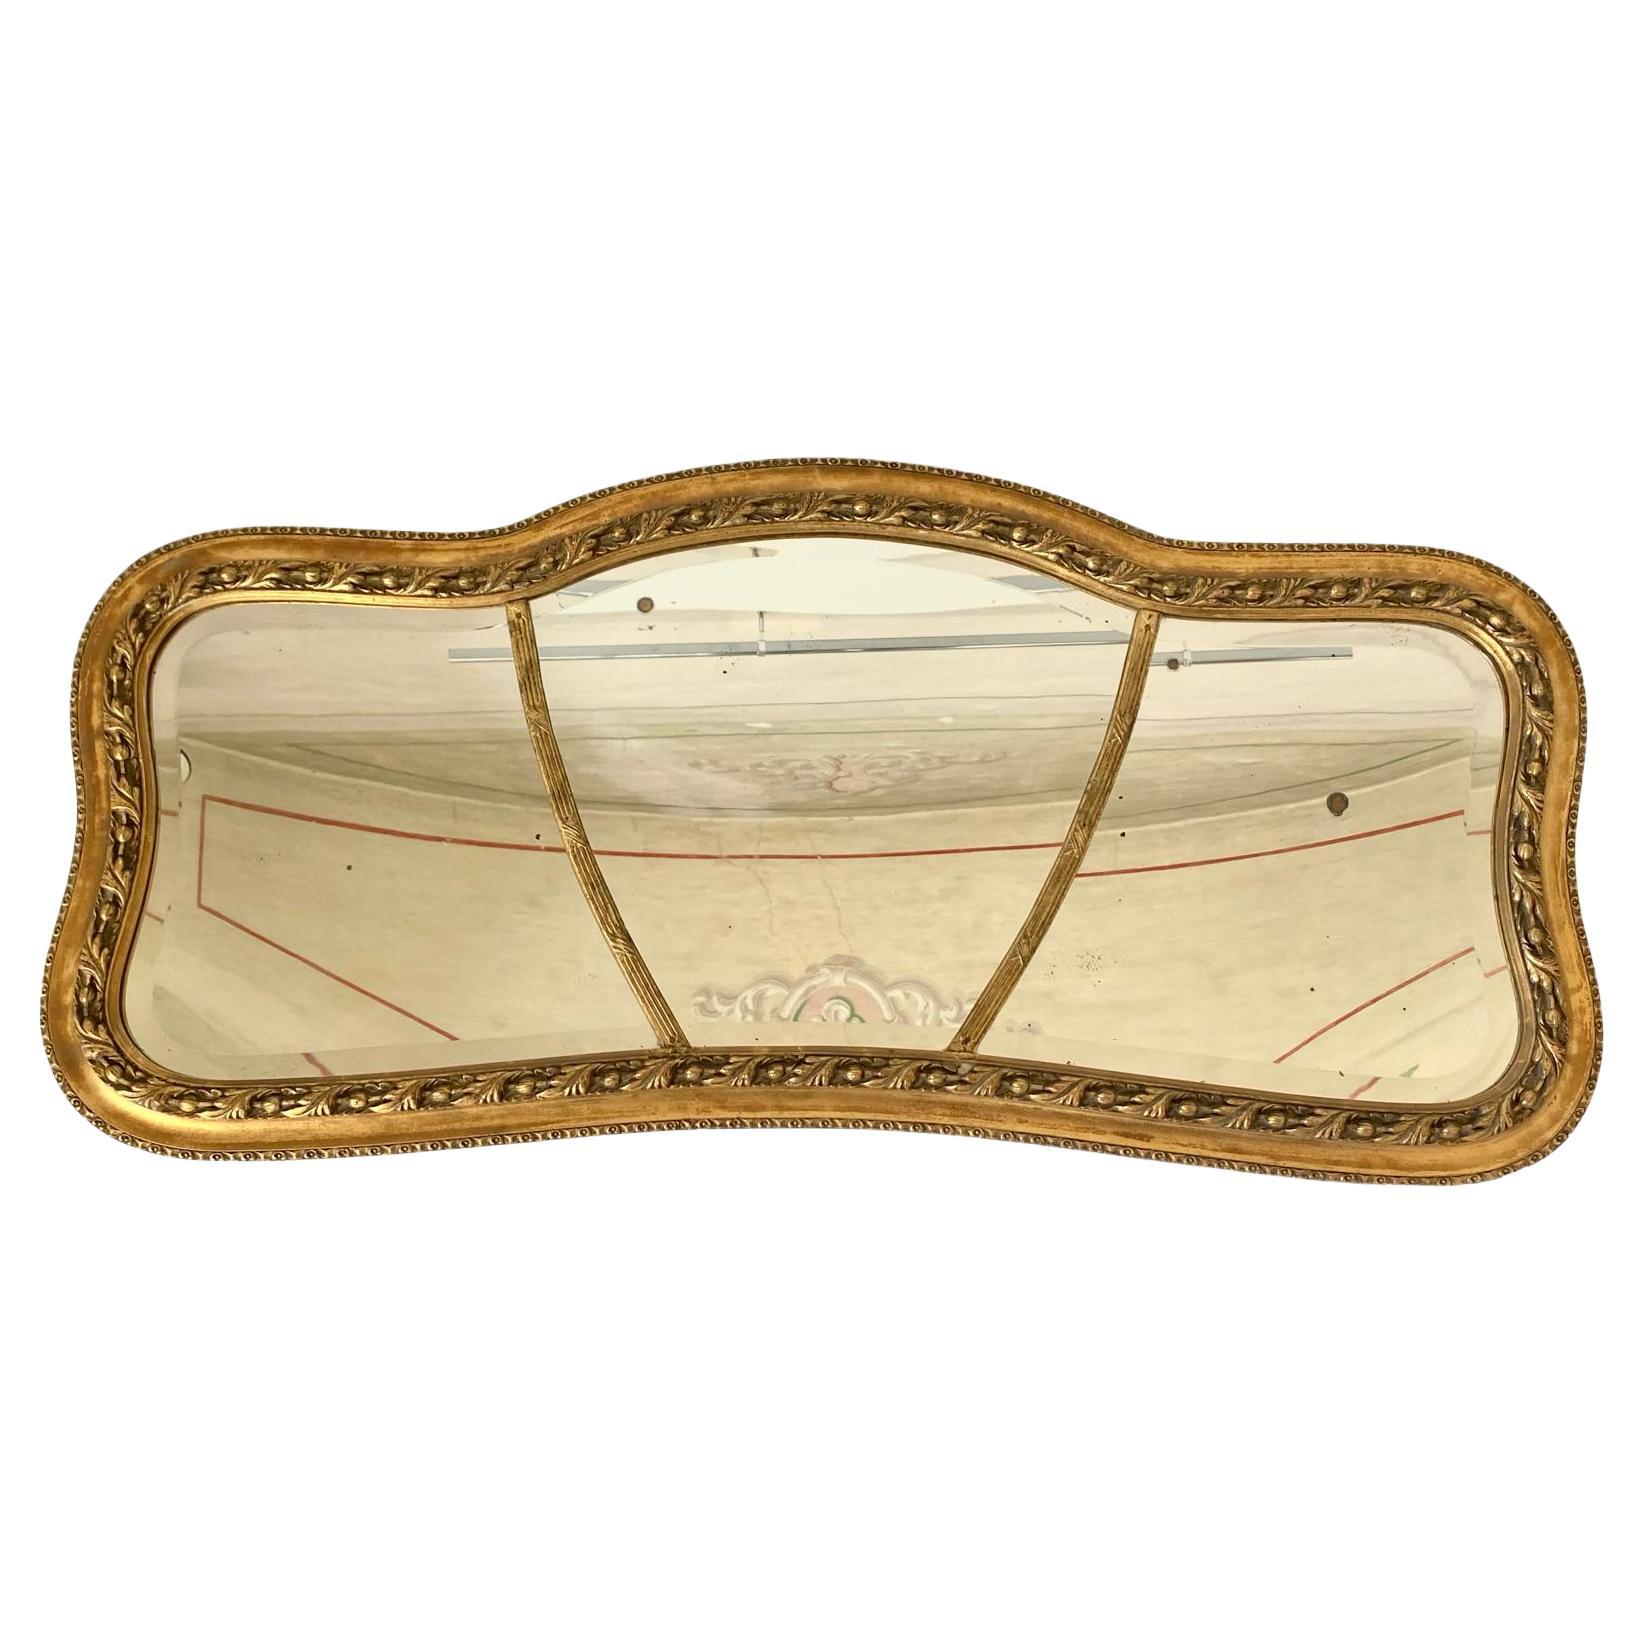 Antiker Goldspiegel, Italien um 1850.
Ein seltener rechteckiger Spiegel aus Blattgold des 19. Jahrhunderts mit edlem, raffiniertem Rahmen.
Der Spiegel ist aus einem Massivholzrahmen mit Blattgoldveredelung gefertigt und mit eleganten Details